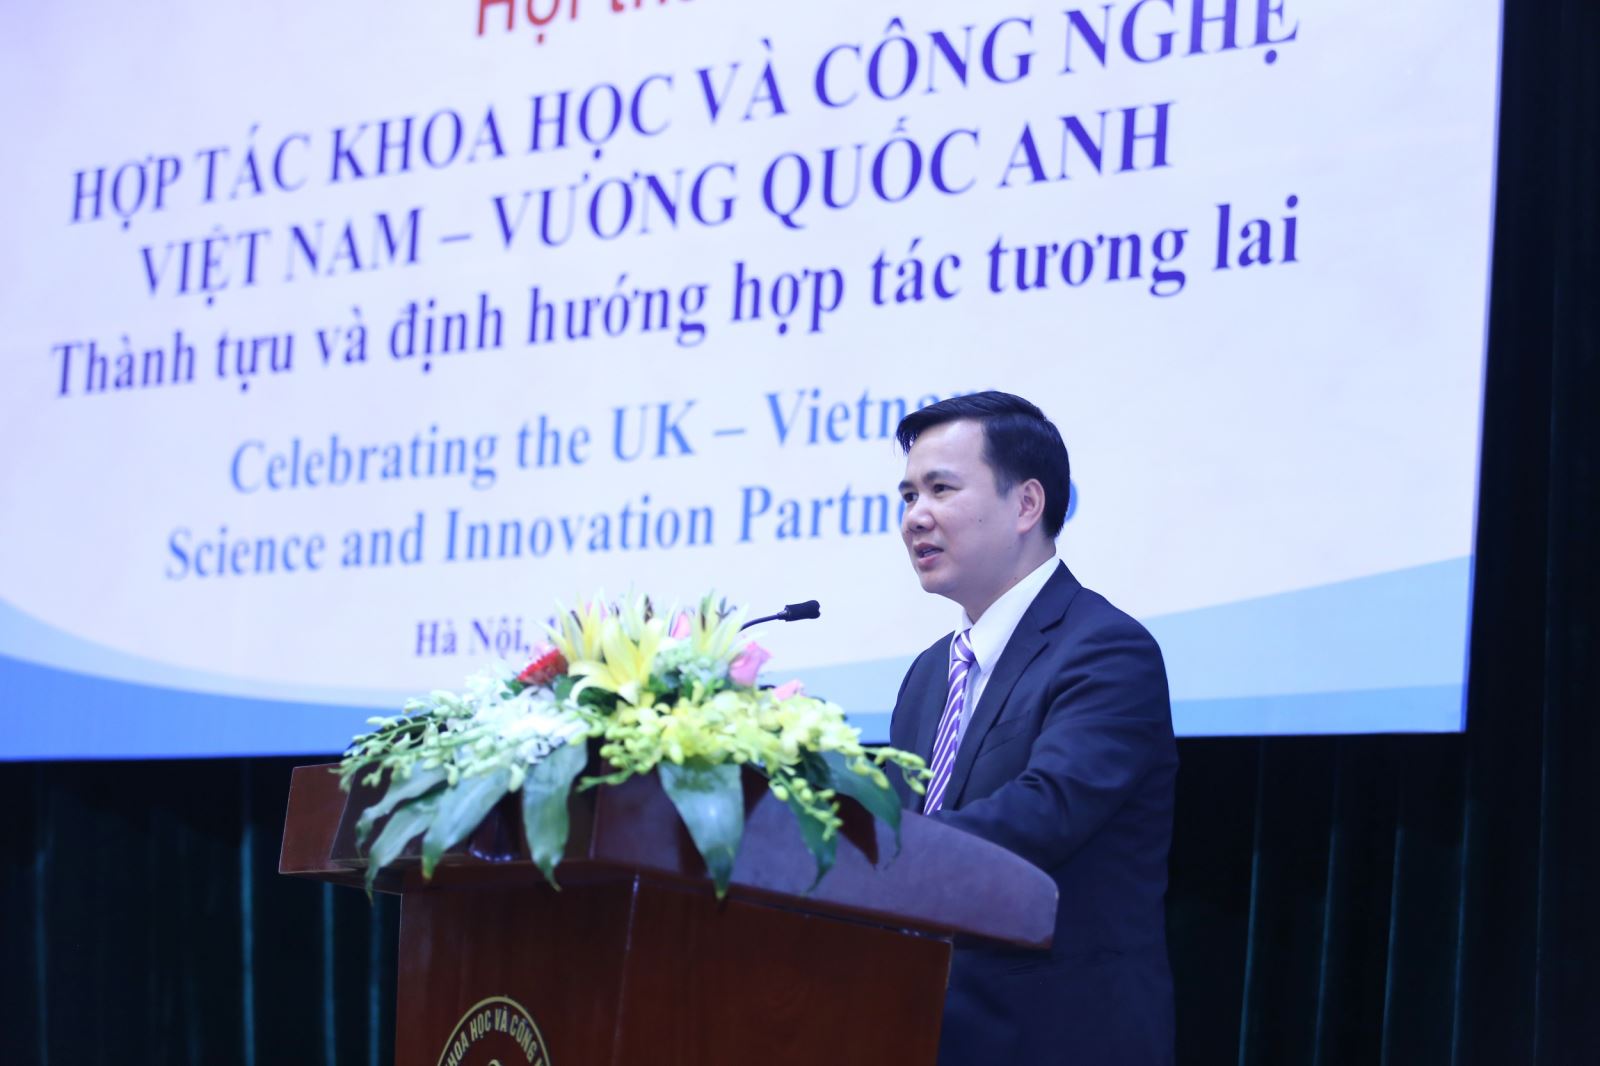 Vương quốc Anh cam kết phát triển các chương trình nghiên cứu là lĩnh vực ưu tiên của Việt Nam